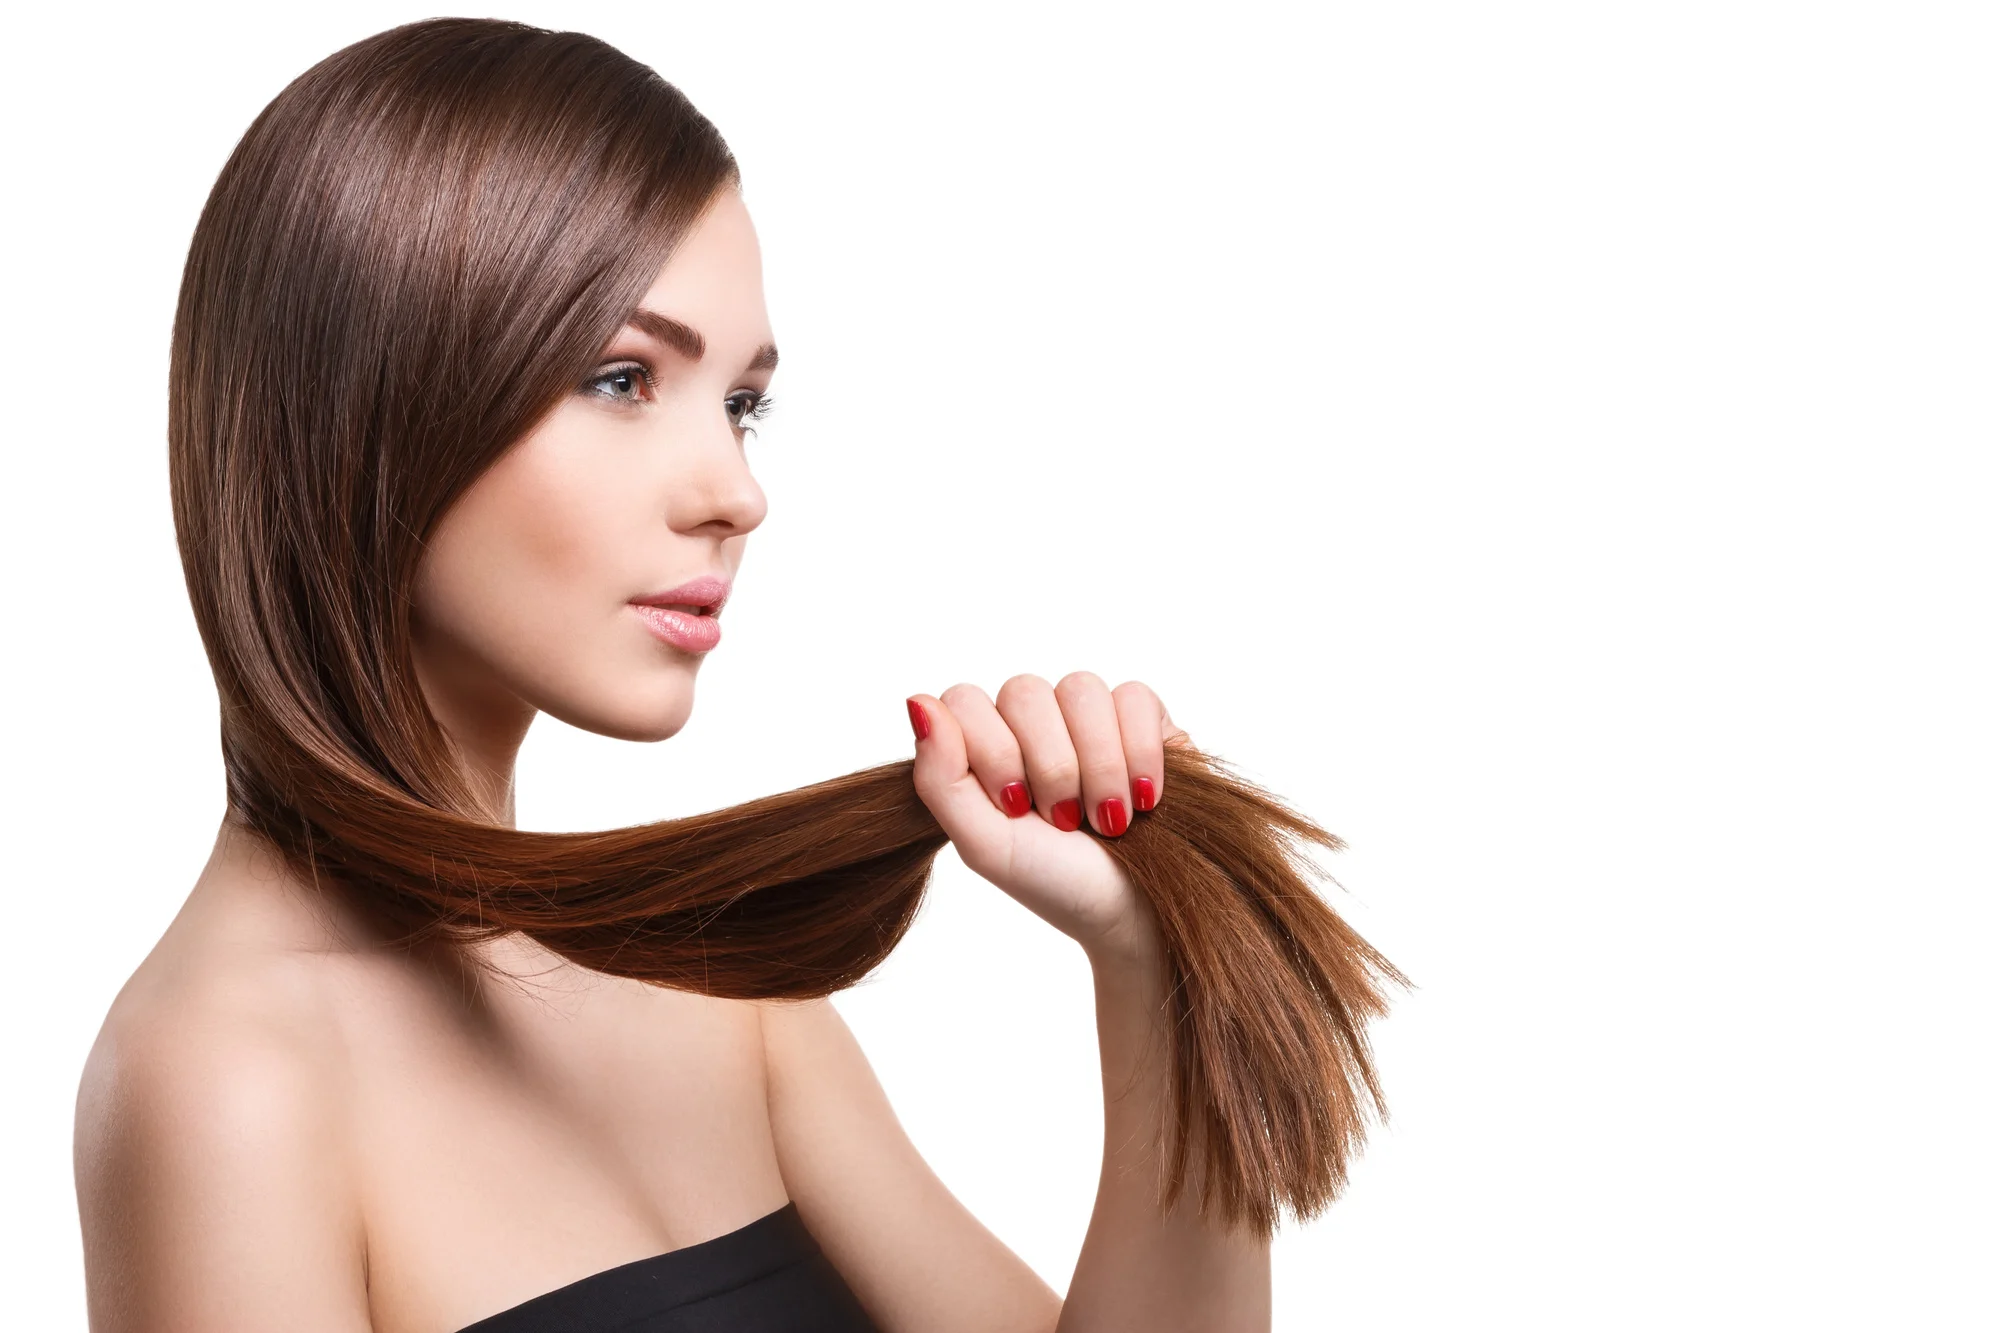 Does Collagen Help Hair?